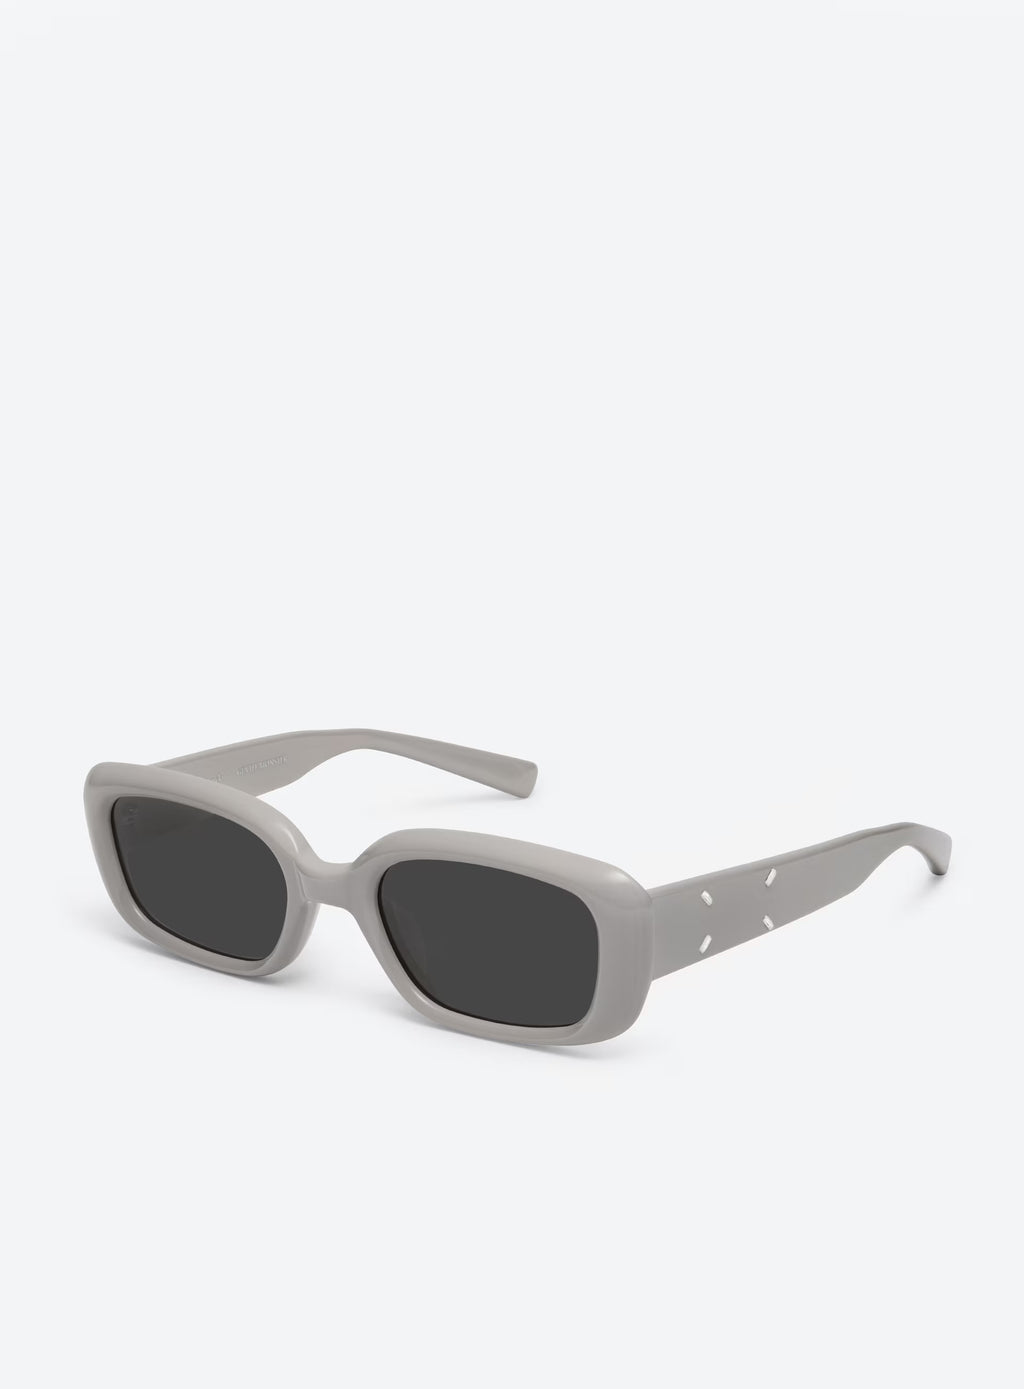 GENTLE MONSTER X MAISON MARGIELA MM106-G10 Sunglasses